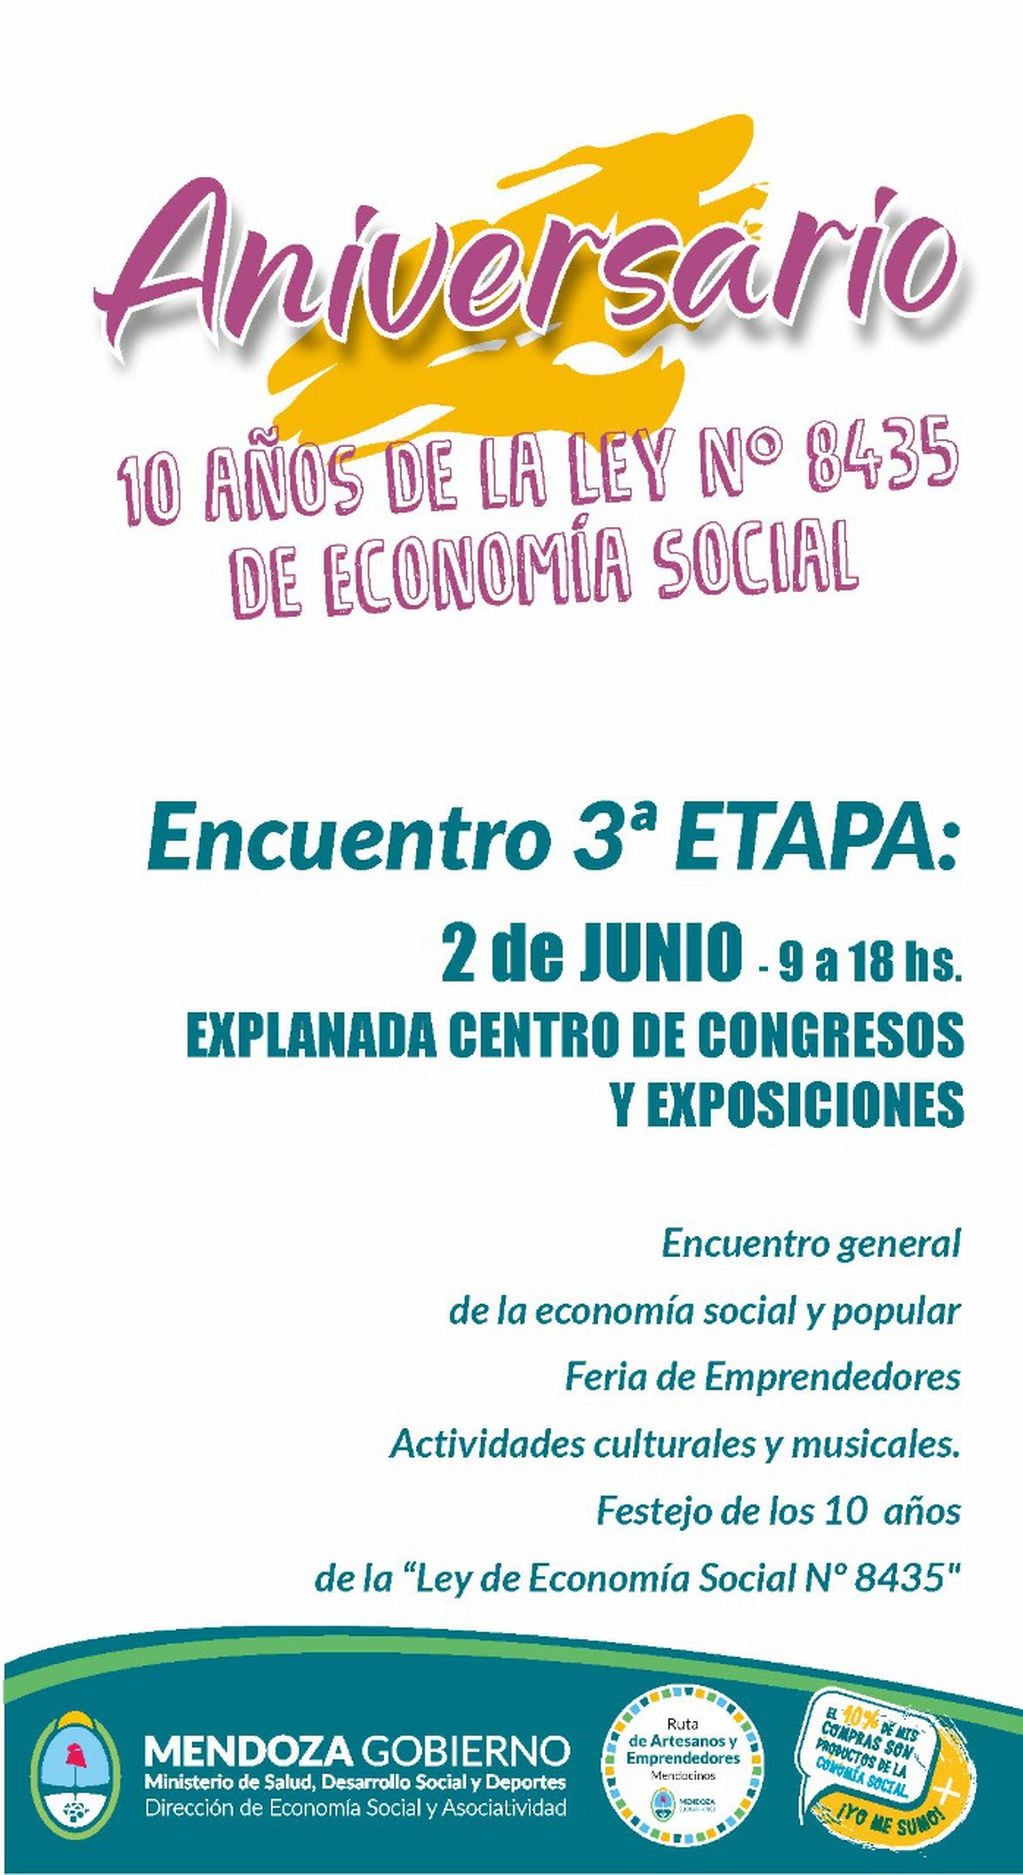 Feria de la Economía Social y Popular de Mendoza con motivo del aniversario de la promulgación de la Ley 8435.